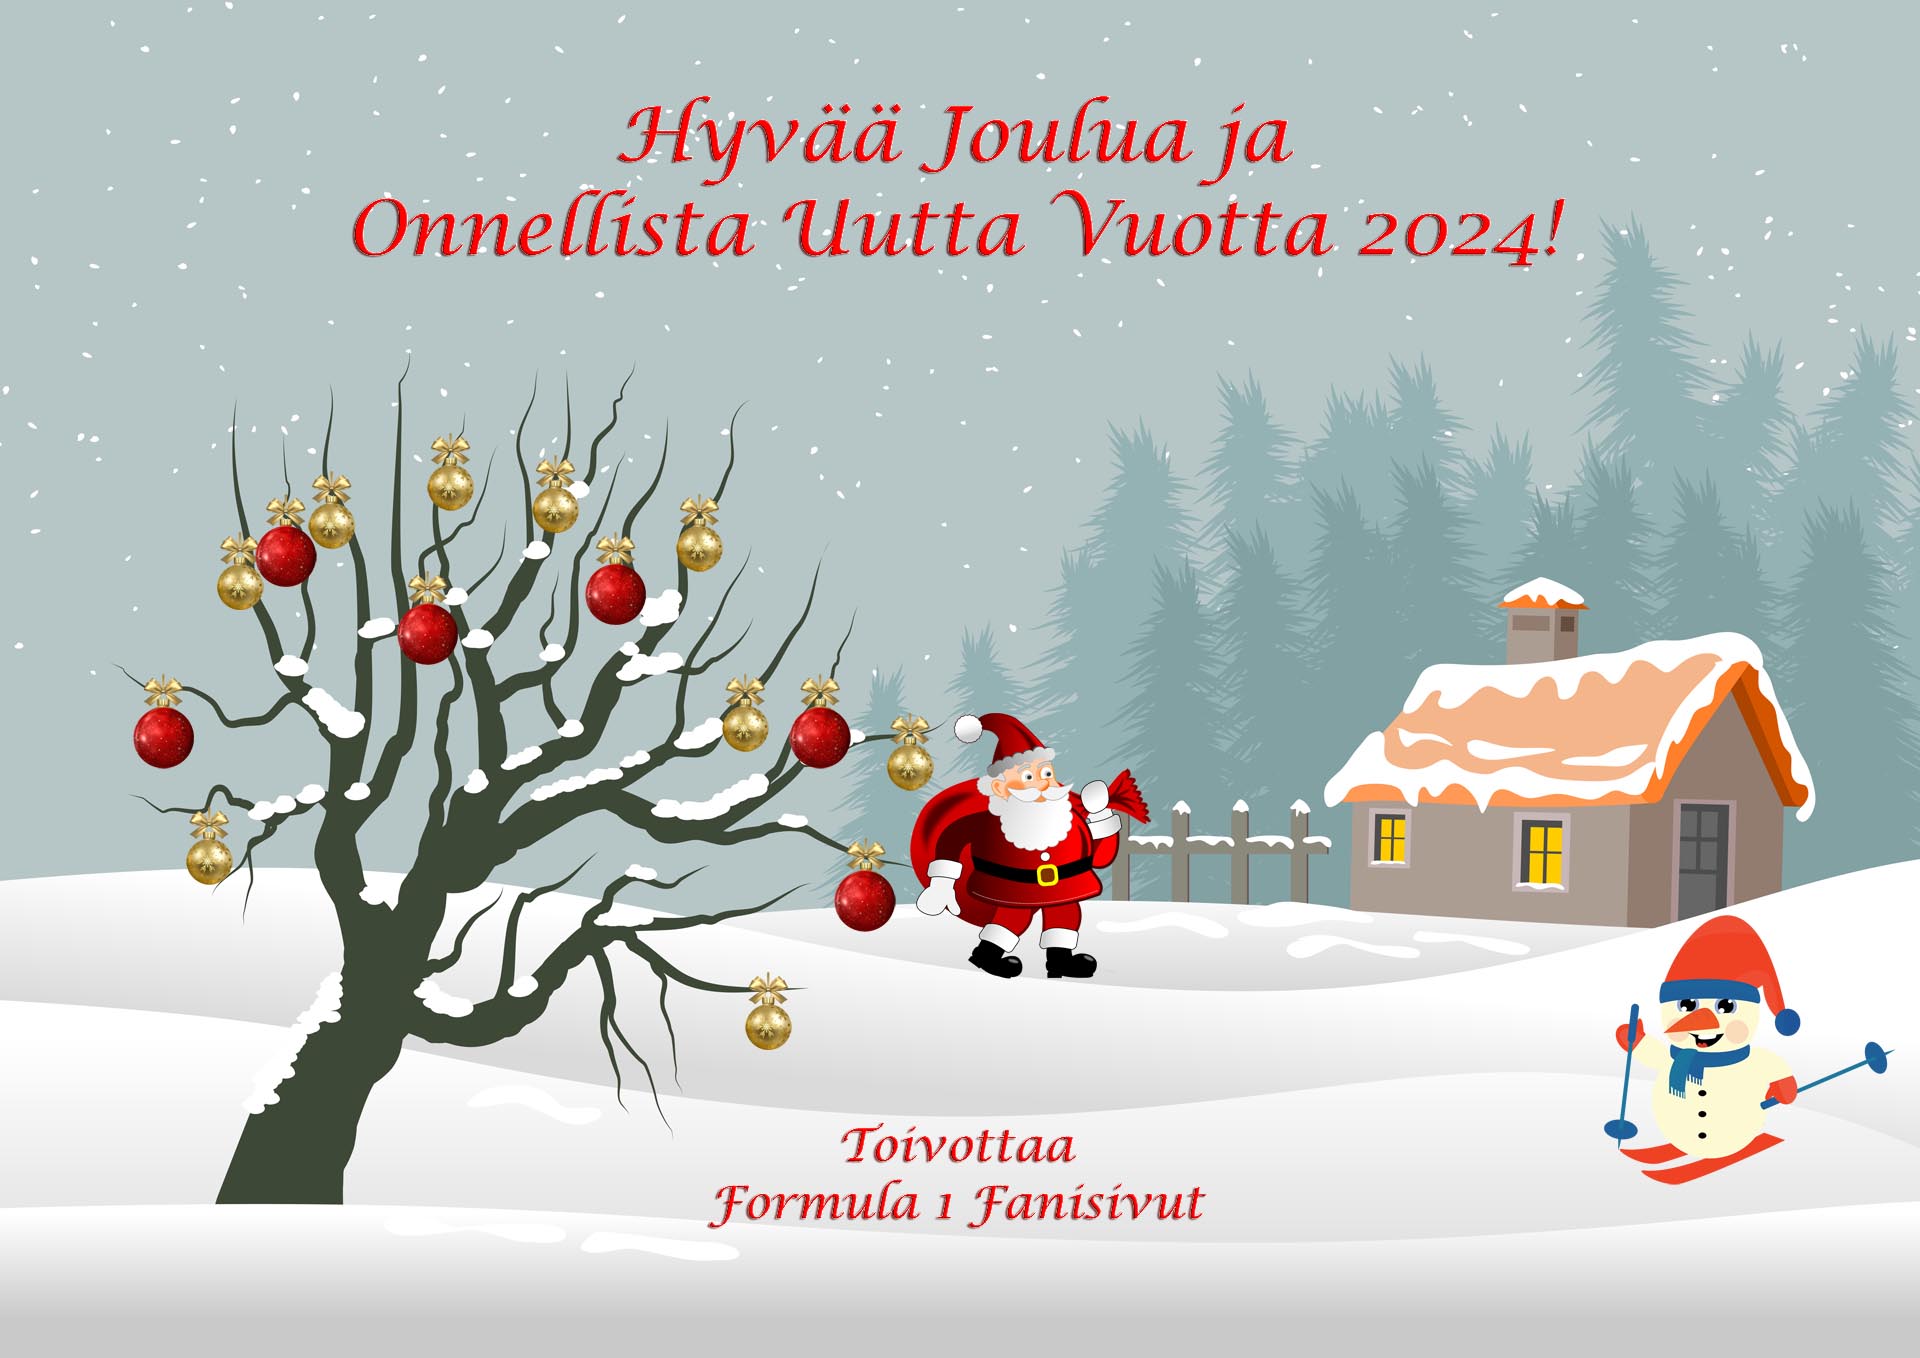 Hyvää joulua ja onnea vuodelle 2024! Kuva: © Pixabay.com. Kuvankäsittely: Jarkko Nieminen / Fanisivut.net.